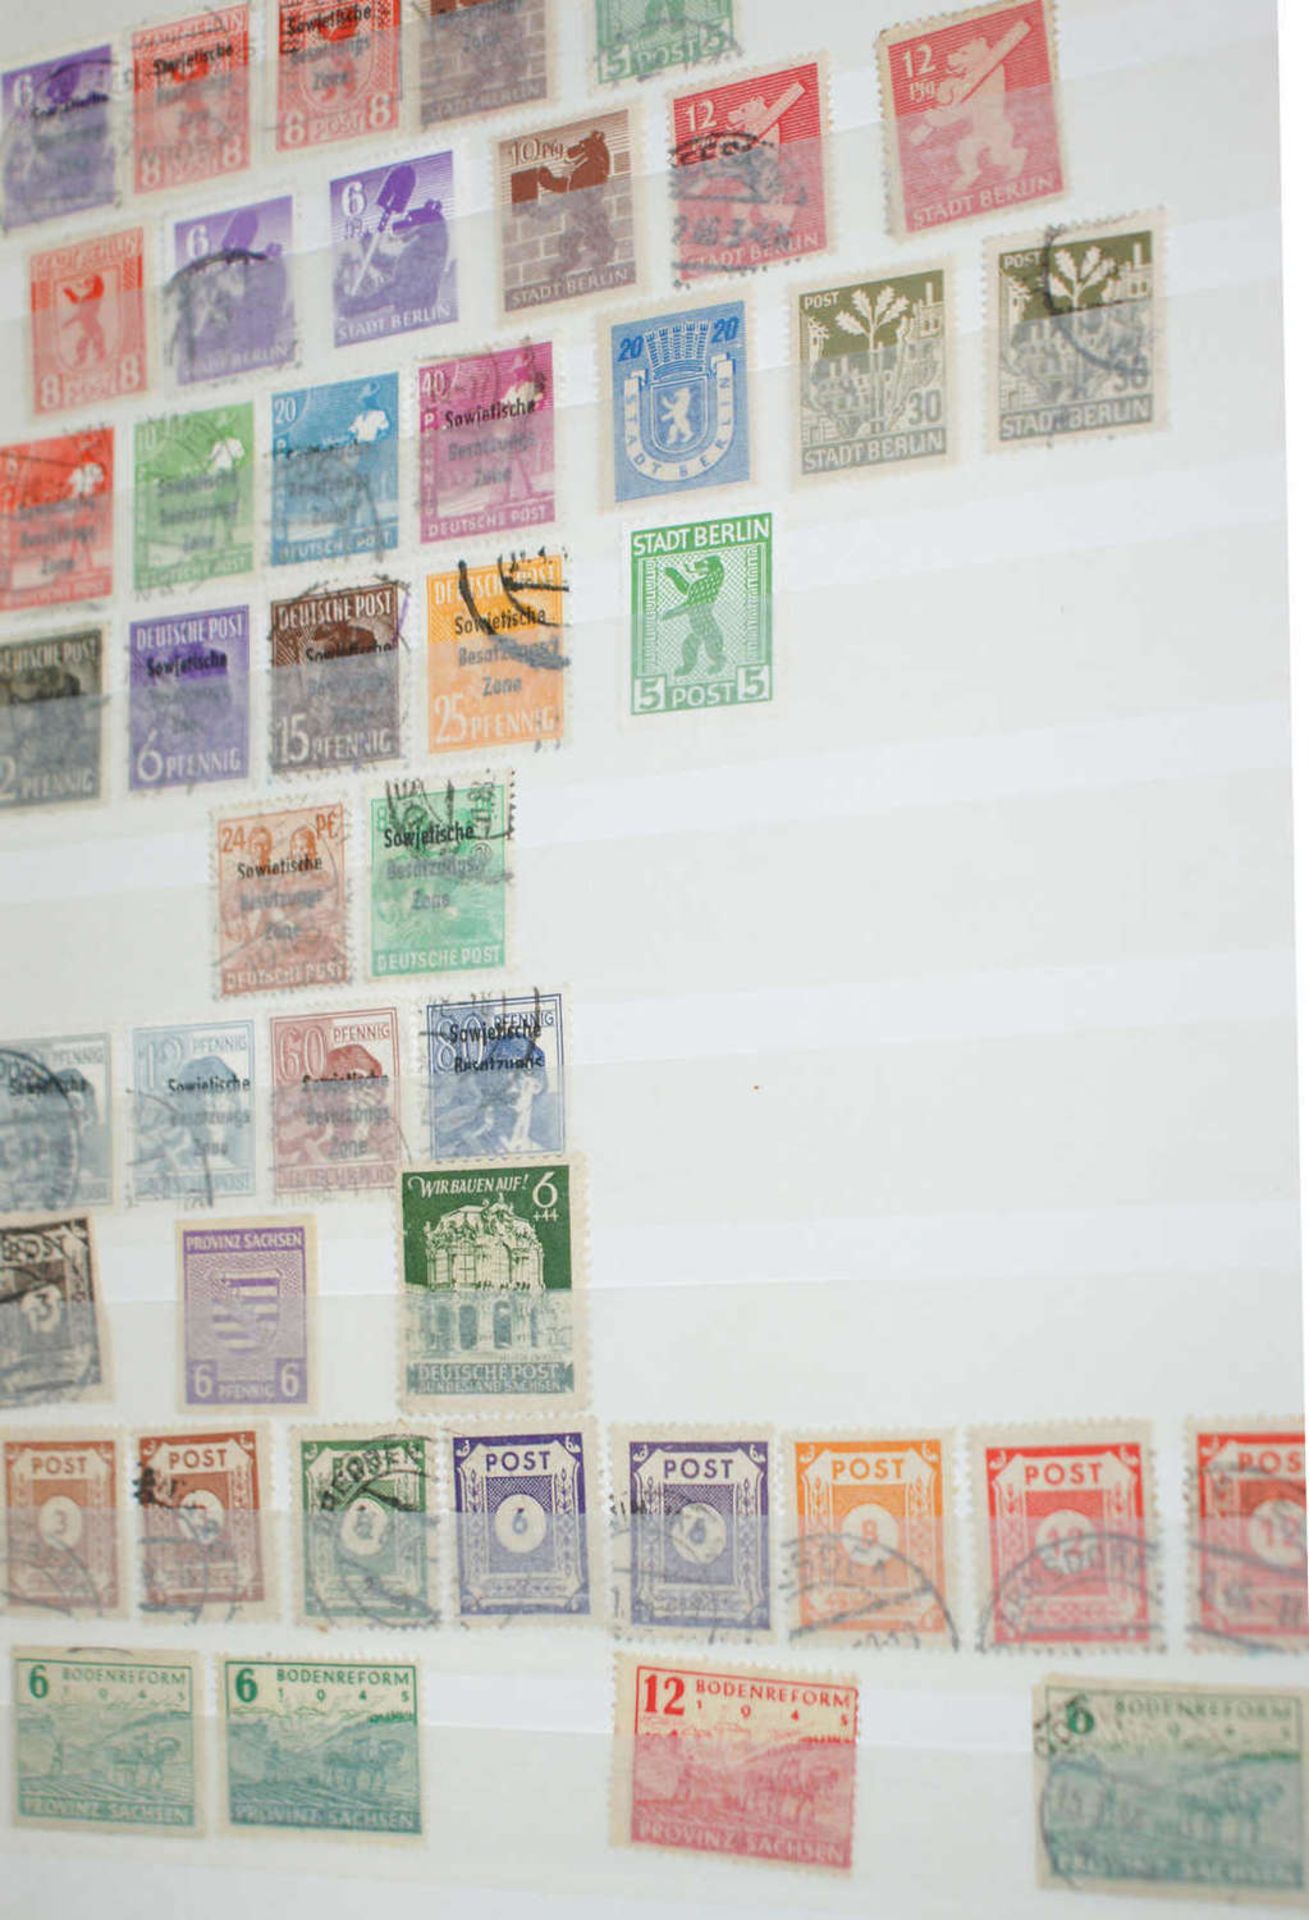 DDR - Briefmarken Dubletten Konvolut, bestehend aus 16 Alben, teilweise schlecht gelagert. - Image 3 of 4